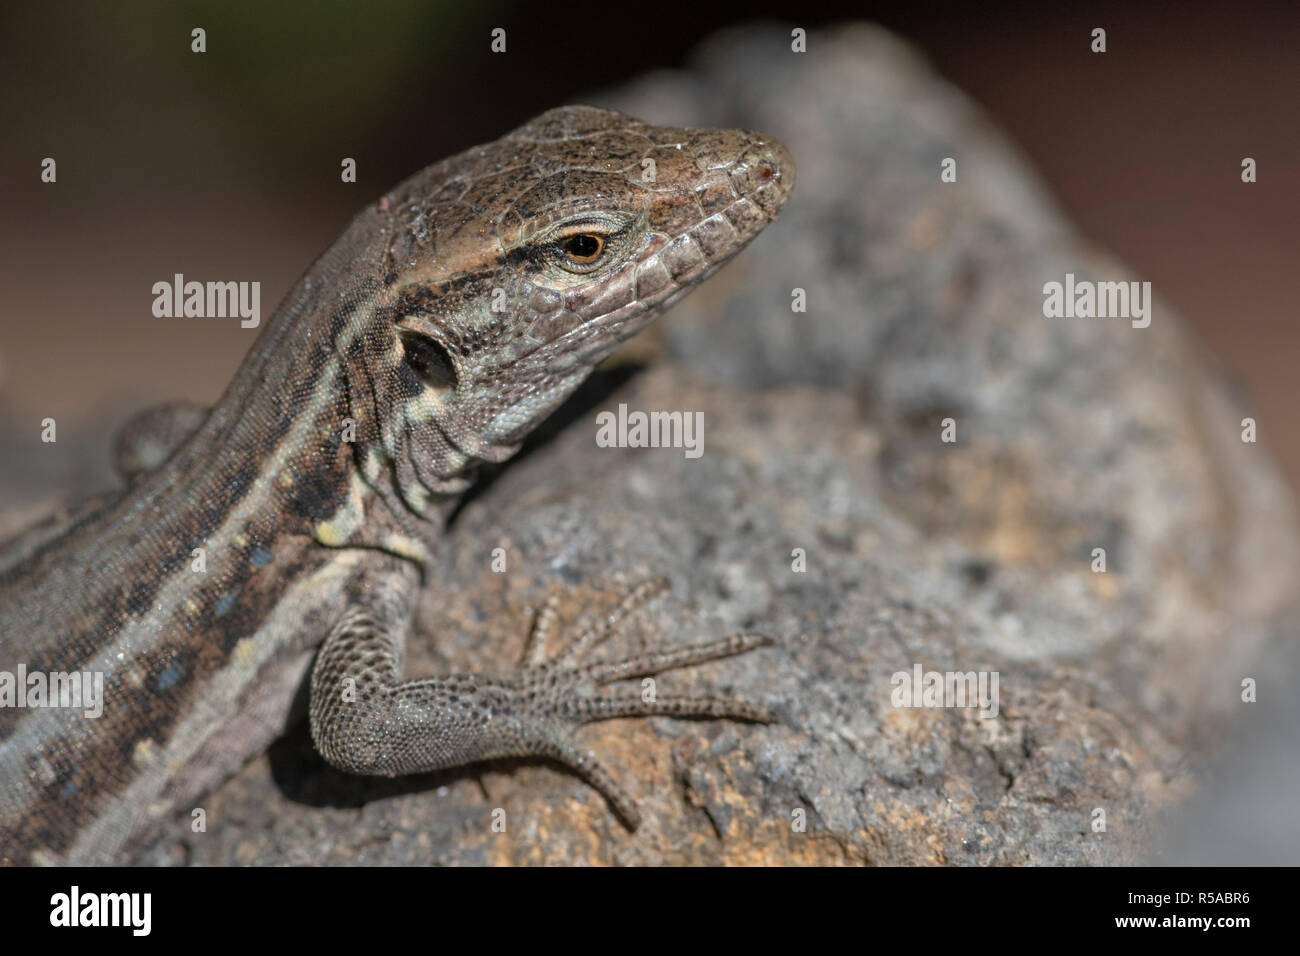 Die westlichen Kanaren Lizard (Gallotia galloti), endemisch, Tier Portrait, Teneriffa, Kanarische Inseln, Spanien Stockfoto